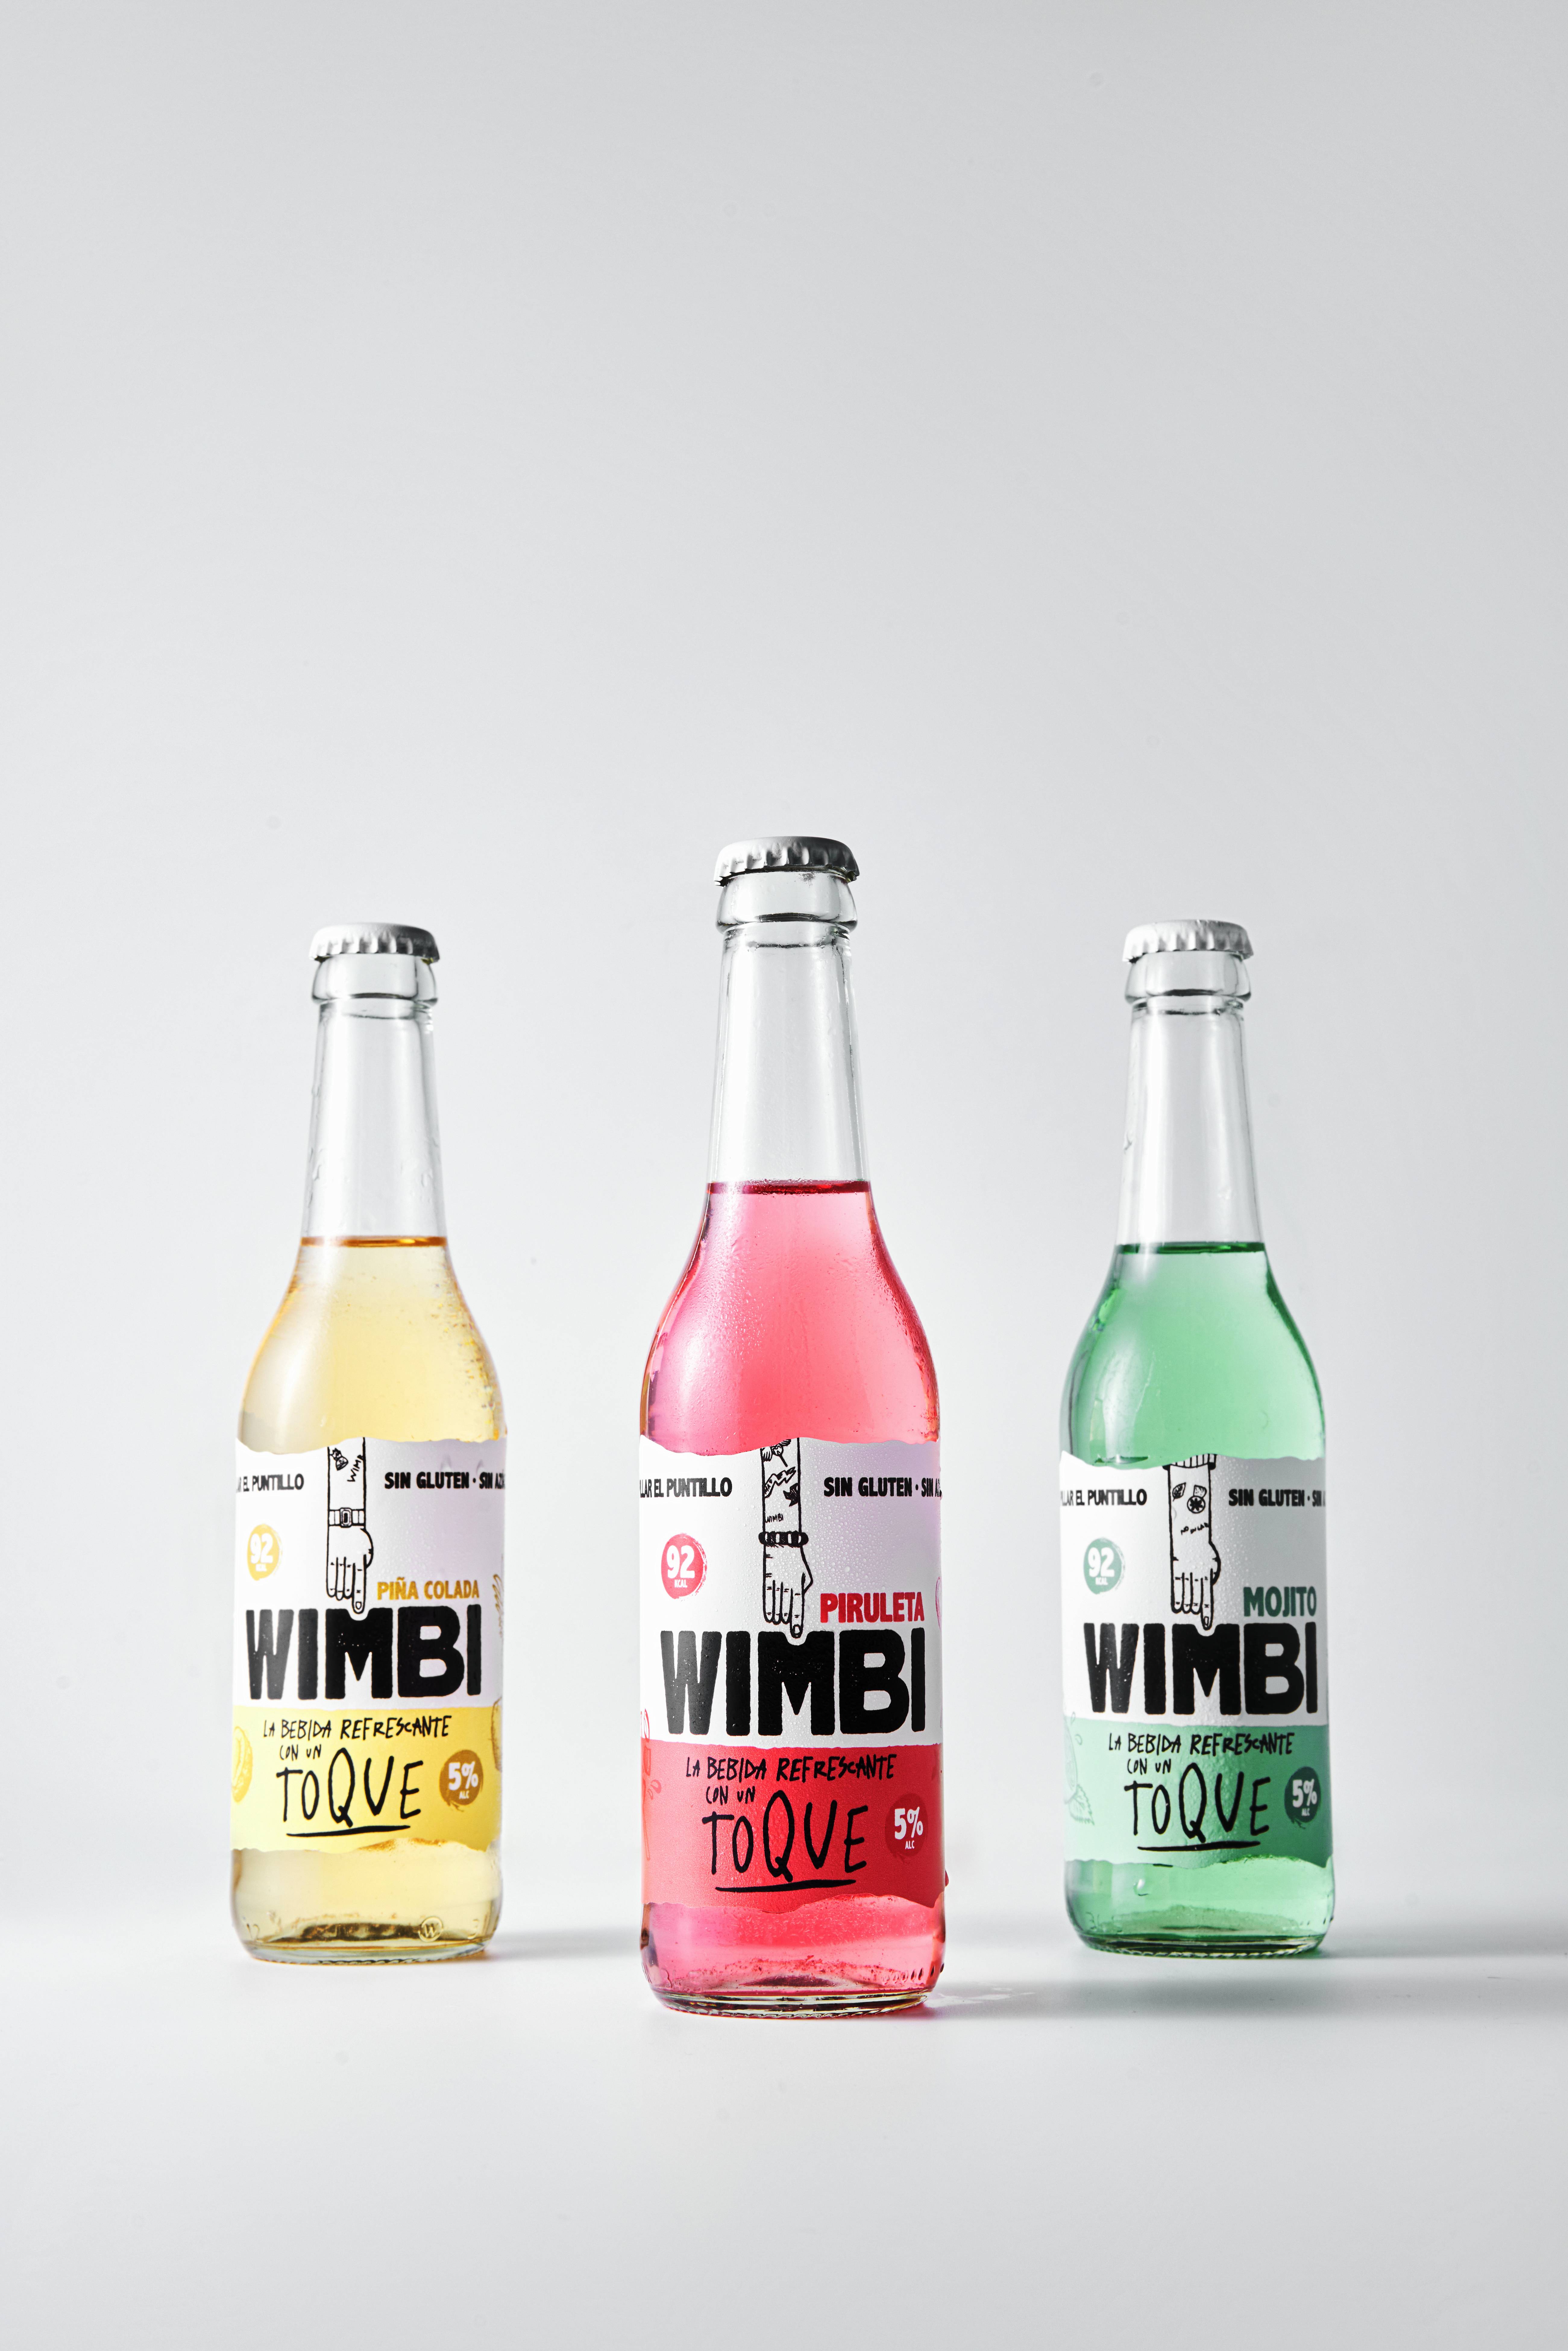 Bodegas Jaime lanza Wimbi, una refrescante bebida sin azúcar, sin gluten y con un toque de alcohol